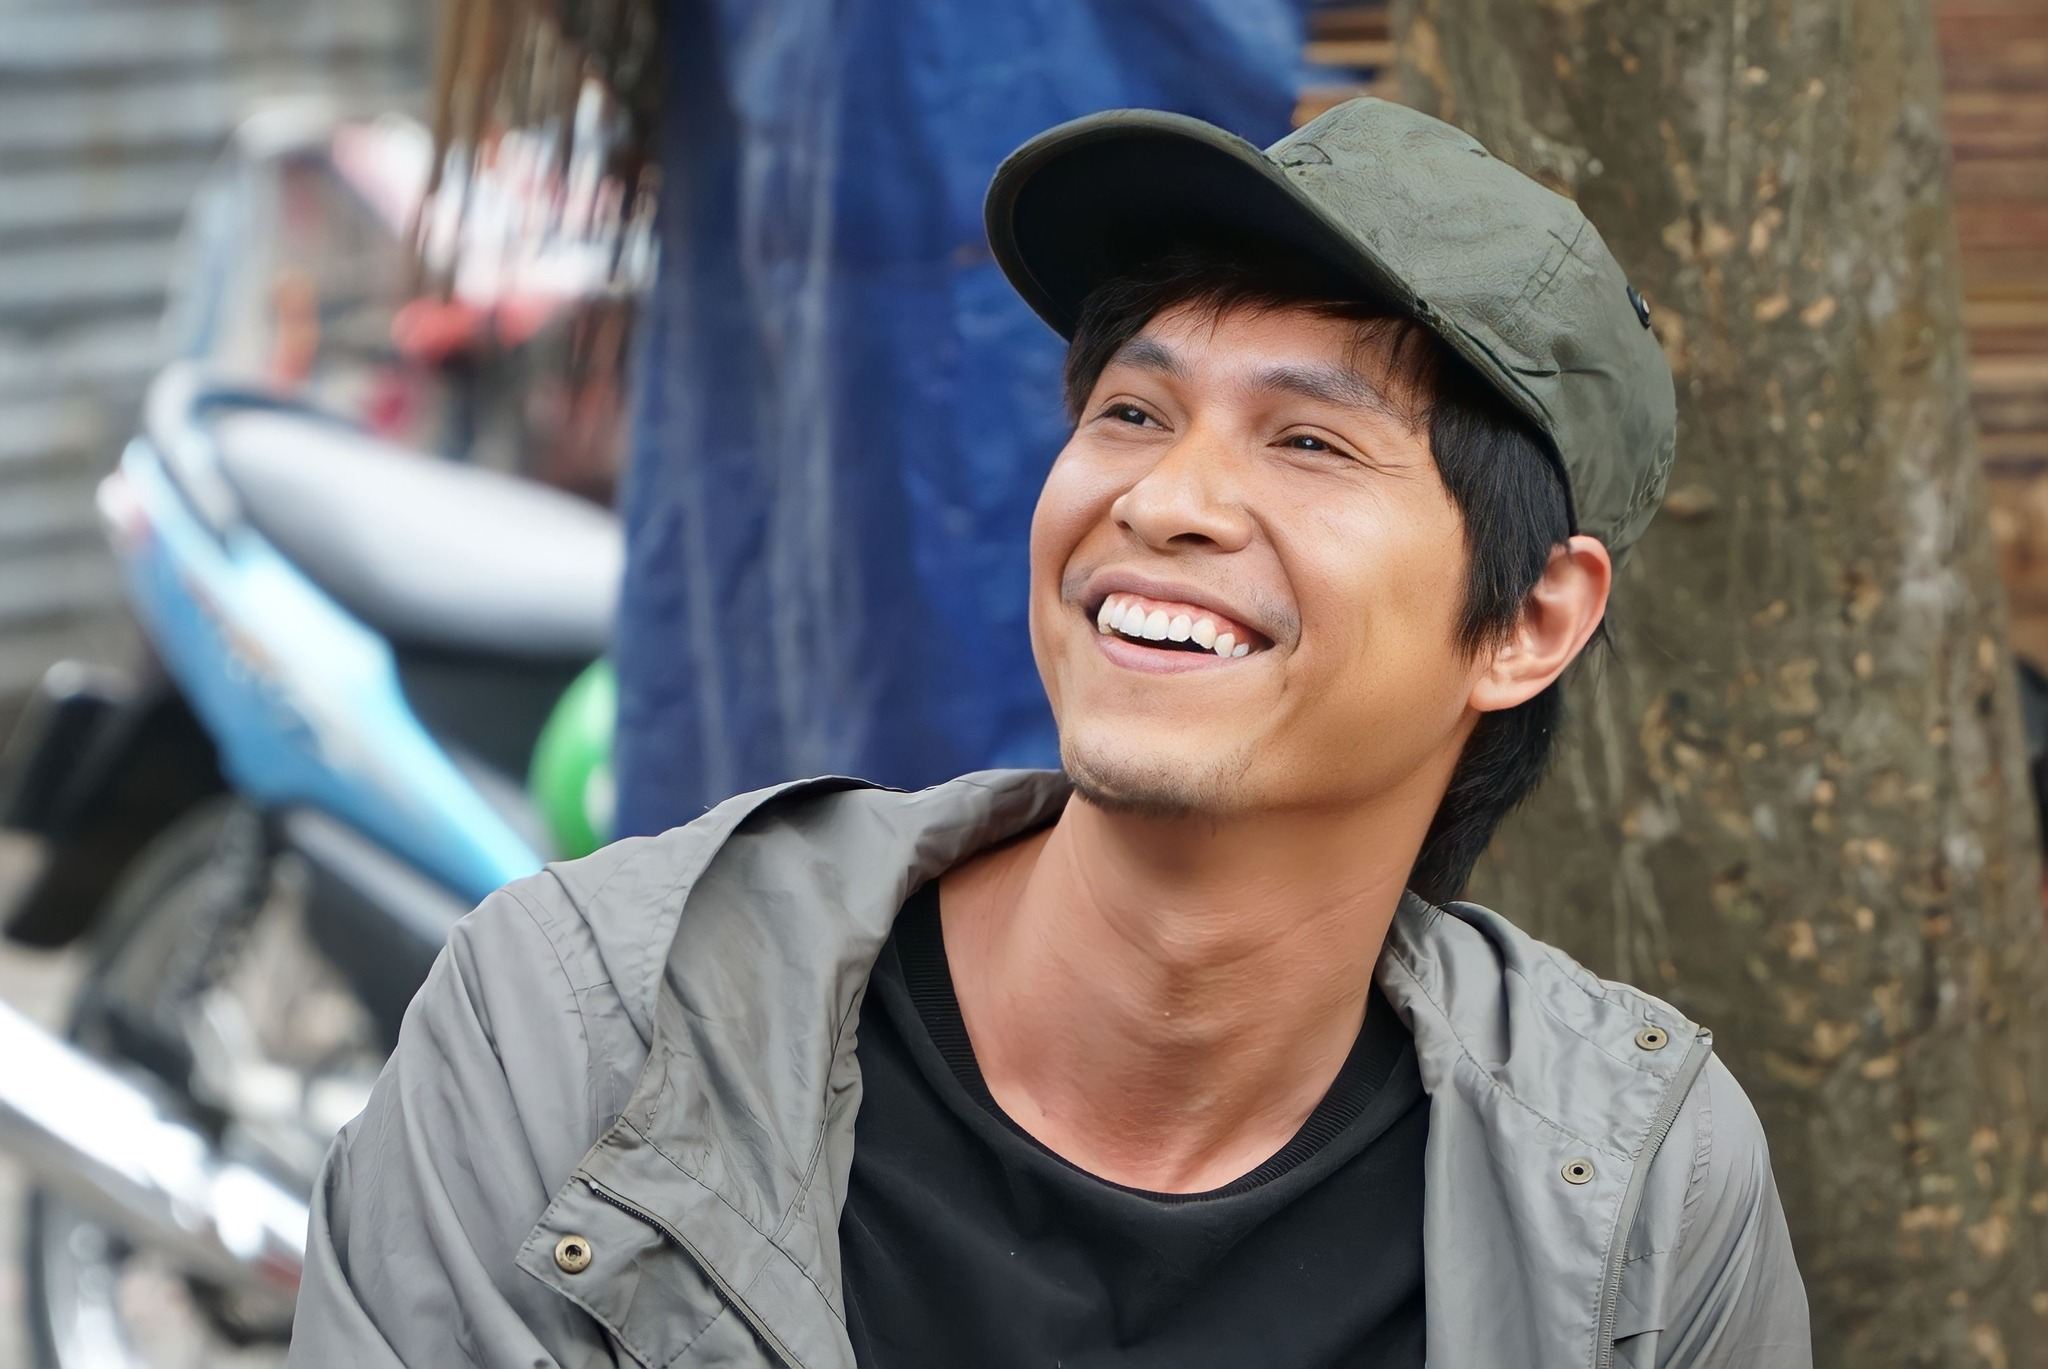 Diễn viên Tô Dũng đảm nhận vai Điền trong “Cuộc đời vẫn đẹp sao“. Ảnh: Chụp màn hình